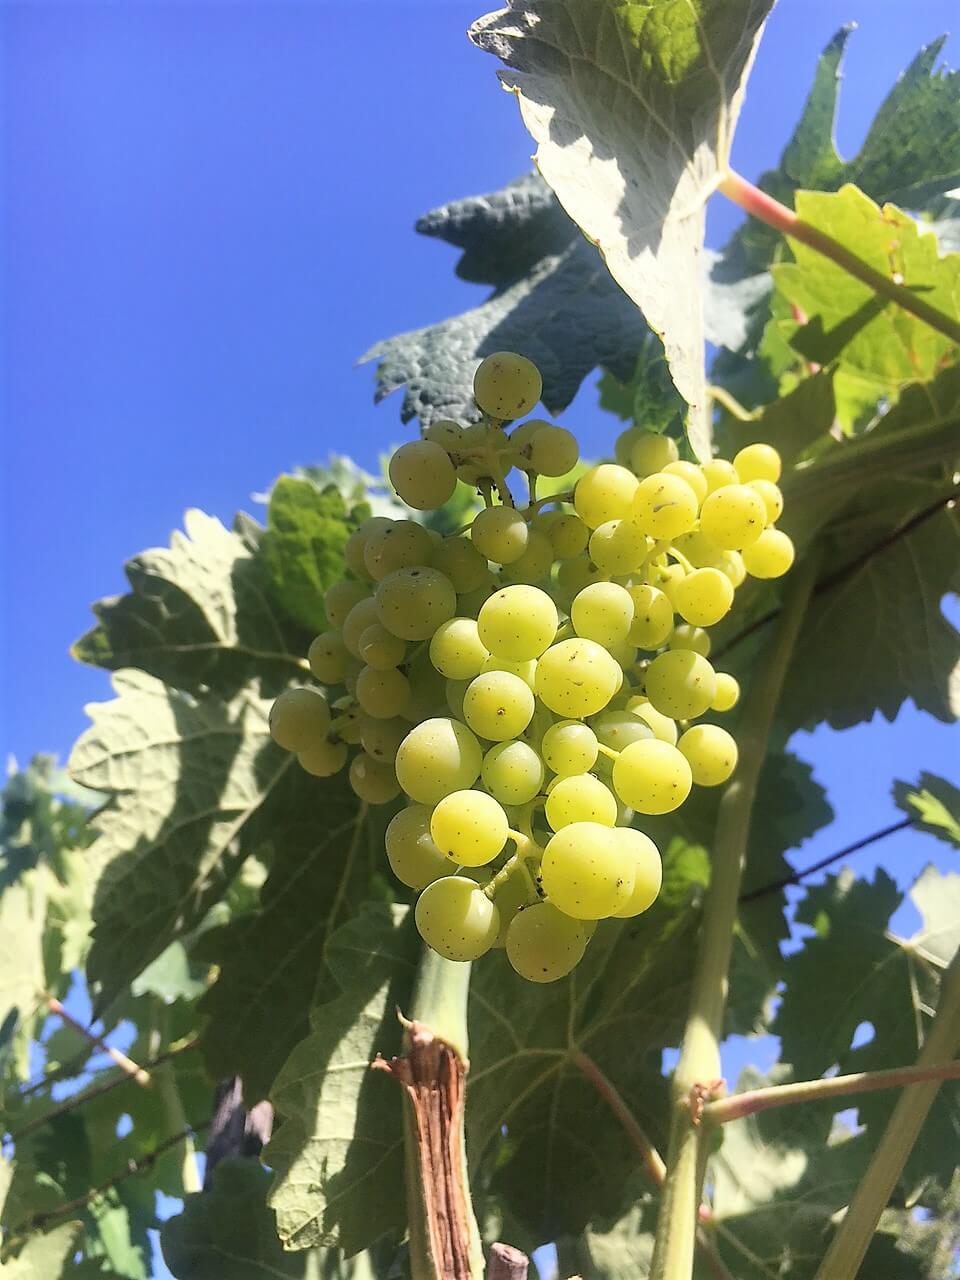 Blomster har blitt til druer. Struttende drueklaser pynter opp vingården vår i Acquapendente i Italia i juli. De gir glede og forventning om en ny vinhøst.